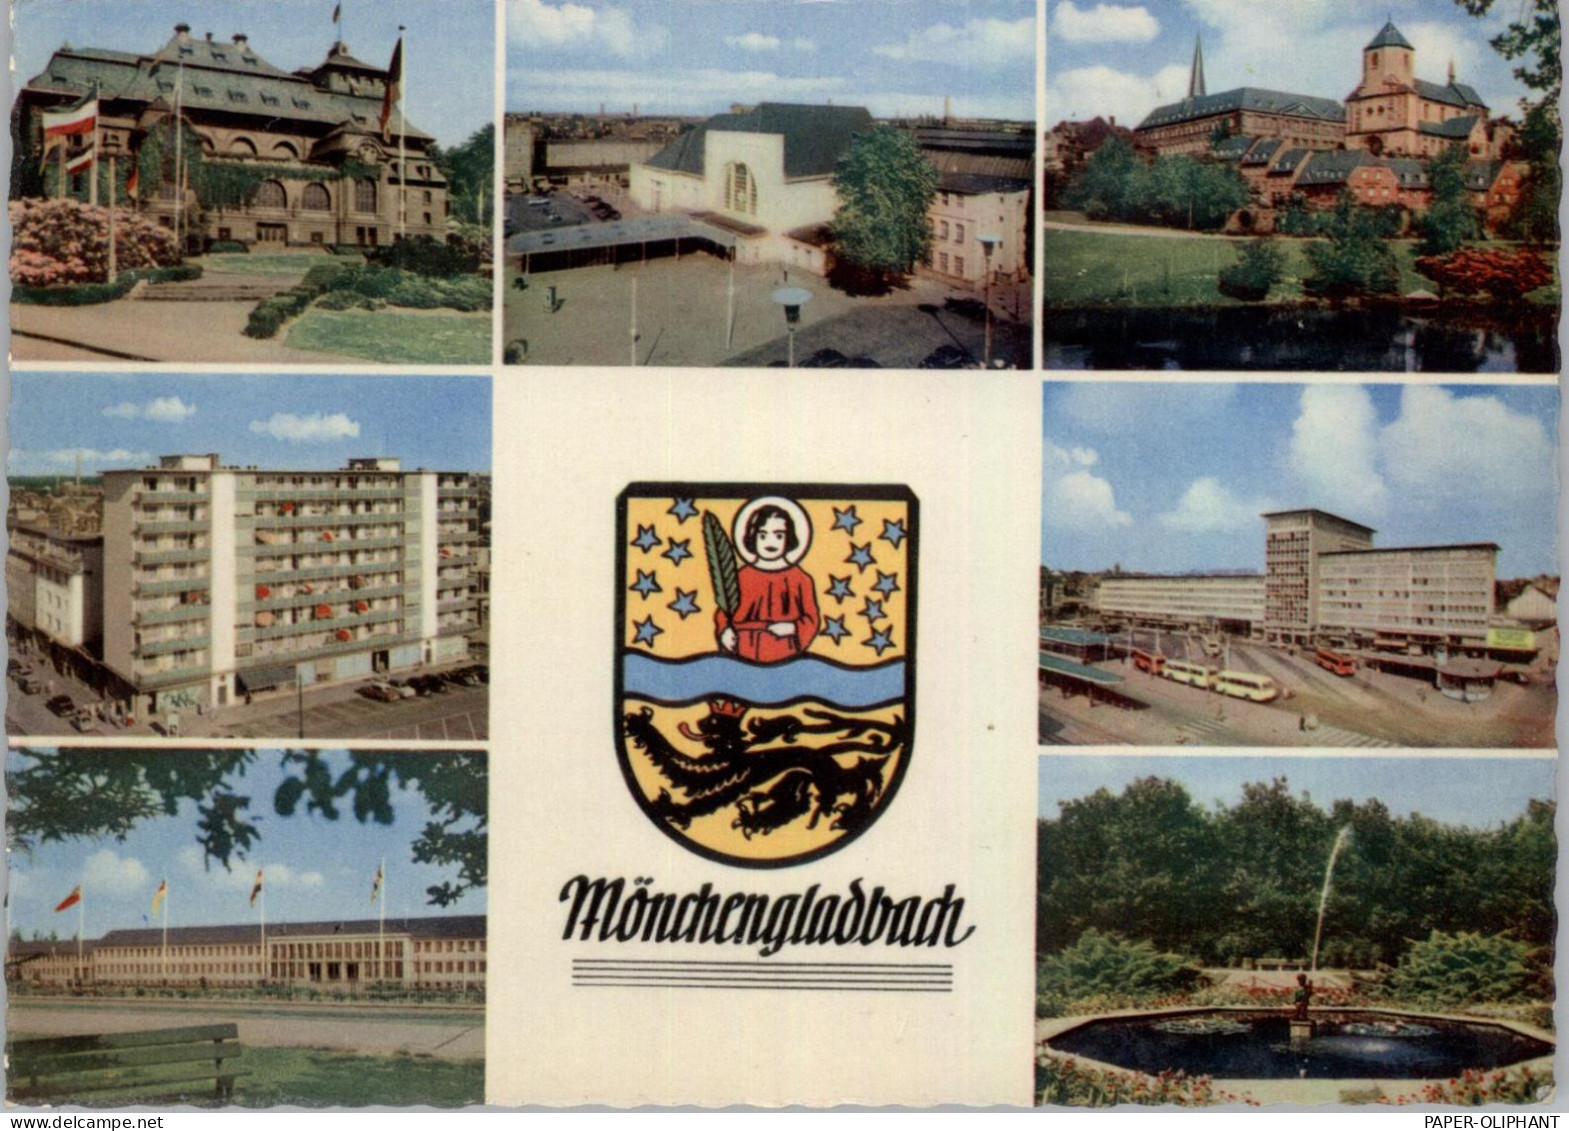 4050 MÖNCHENGLADBACH, Mehrbild-AK, Stadtwappen, 1961 - Mönchengladbach